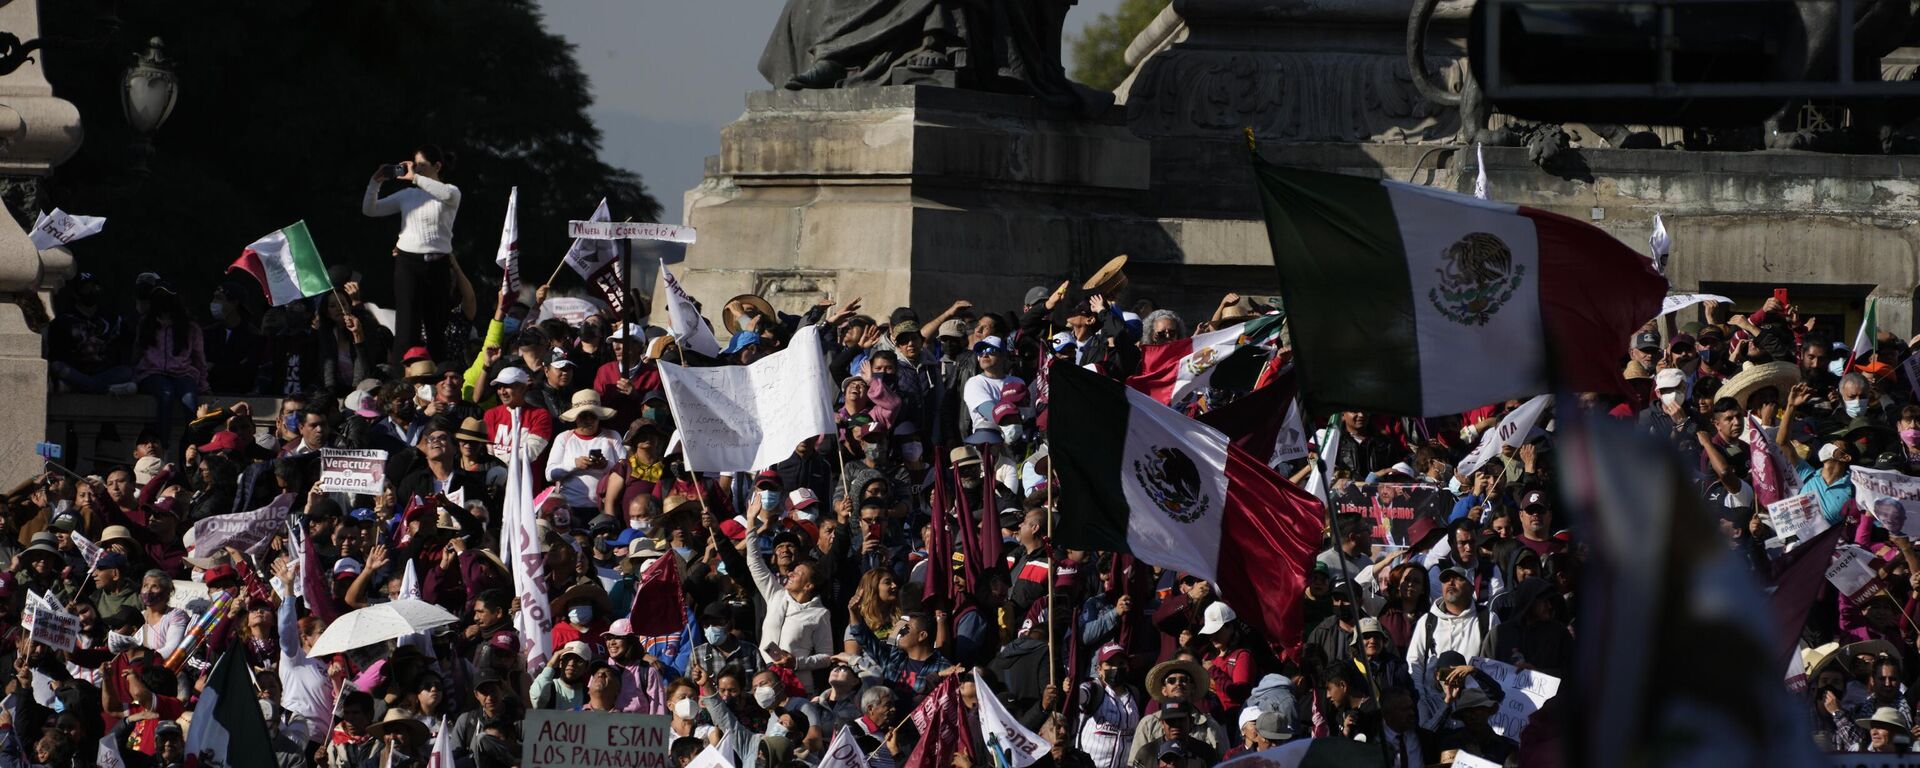 Miles de mexicanos se congregan en la capital para la marcha del presidente, Andrés Manuel Lopez Obrador - Sputnik Mundo, 1920, 27.11.2022